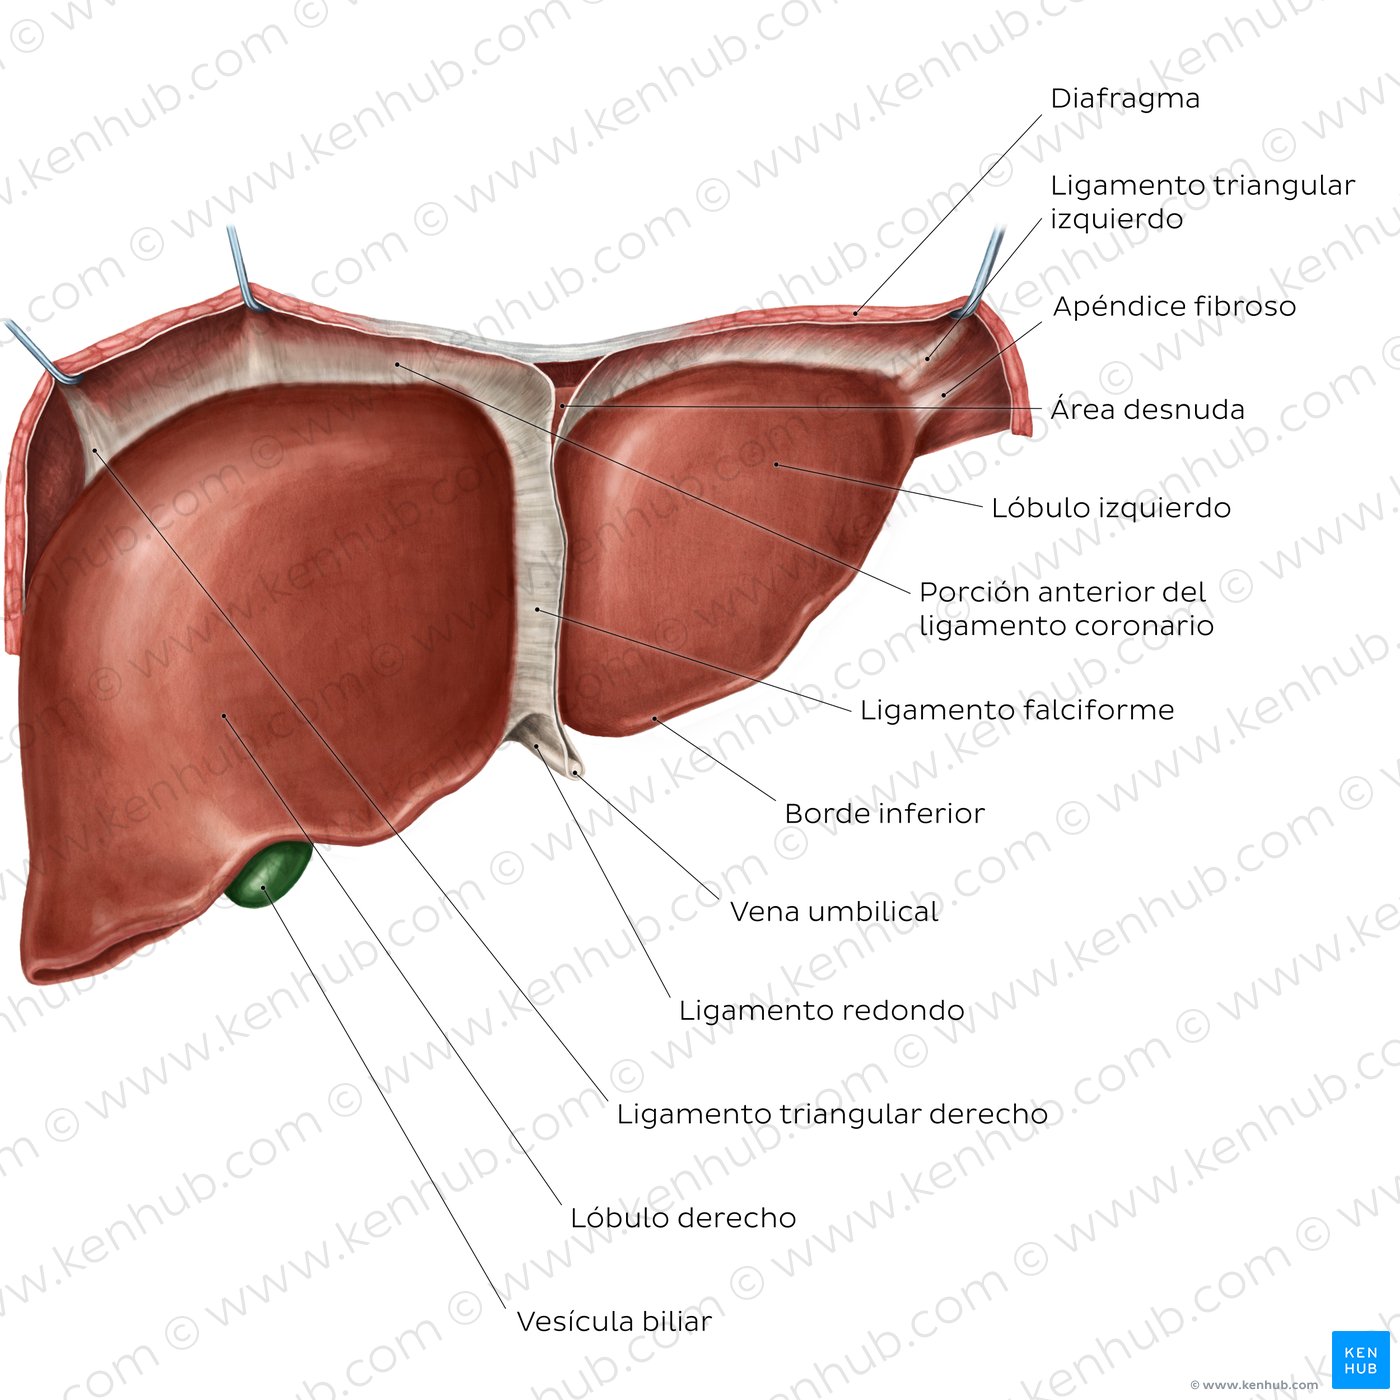 Anatomía del hígado: Vista anterior